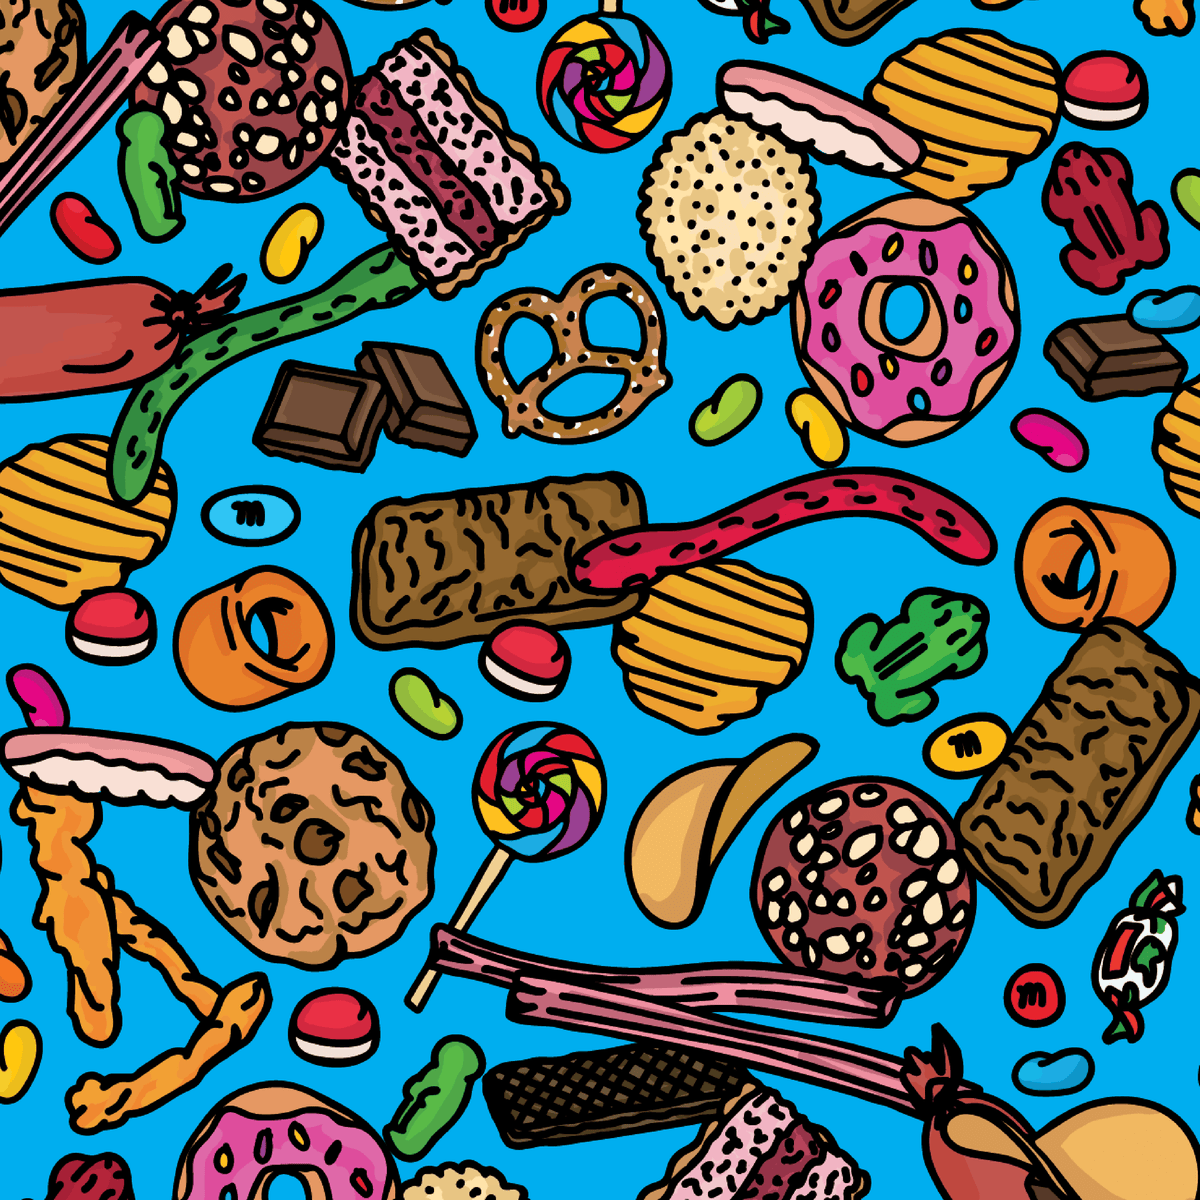 Snacks! 🍬🍪 – Stubby Holder